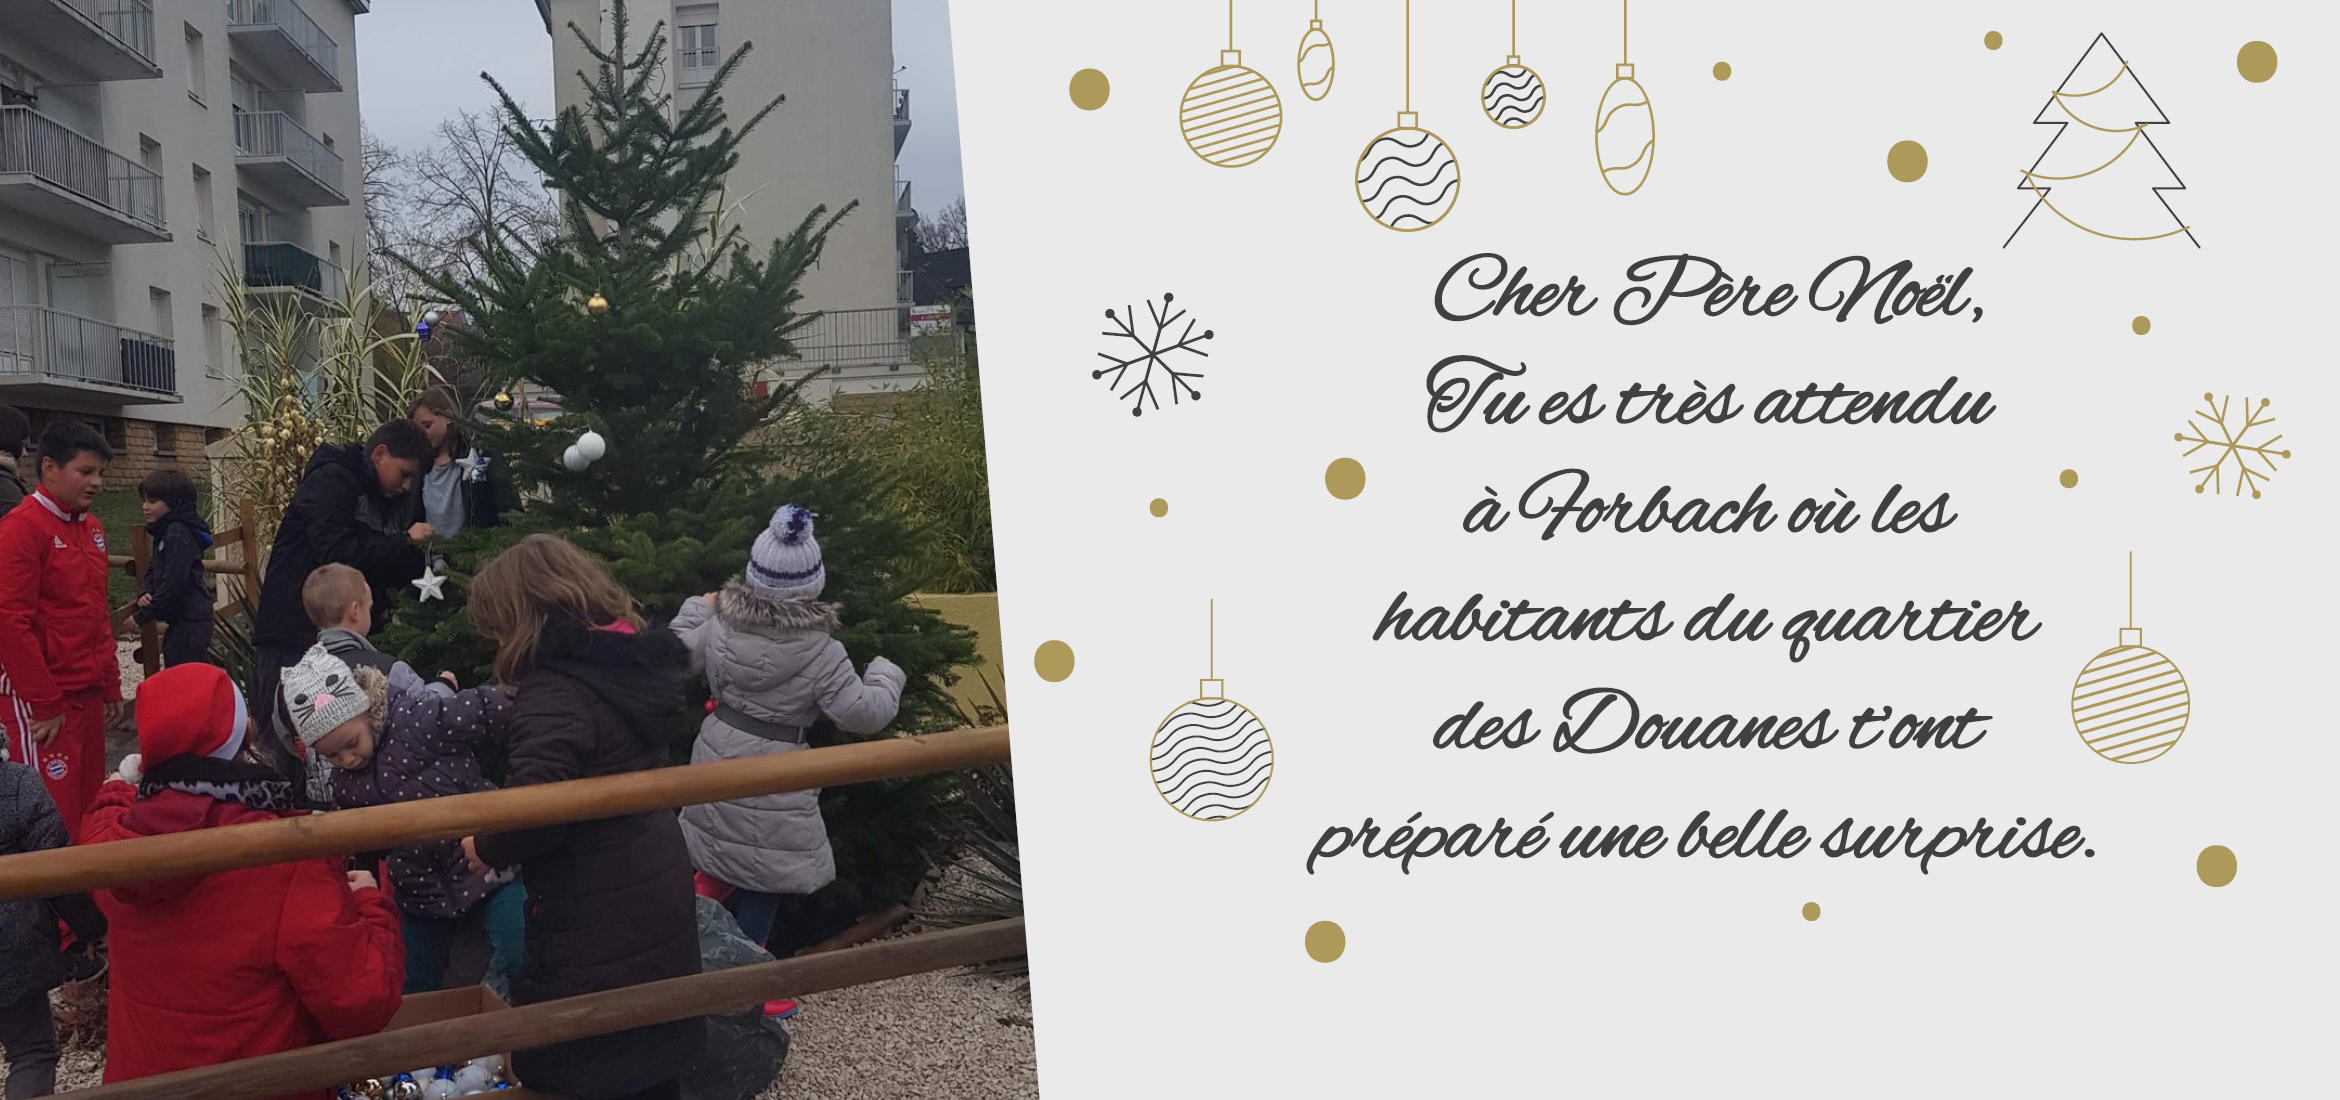 « Cher Père Noël, Tu es très attendu à Forbach où les habitants du quartier des Douanes t’ont préparé une belle surprise »